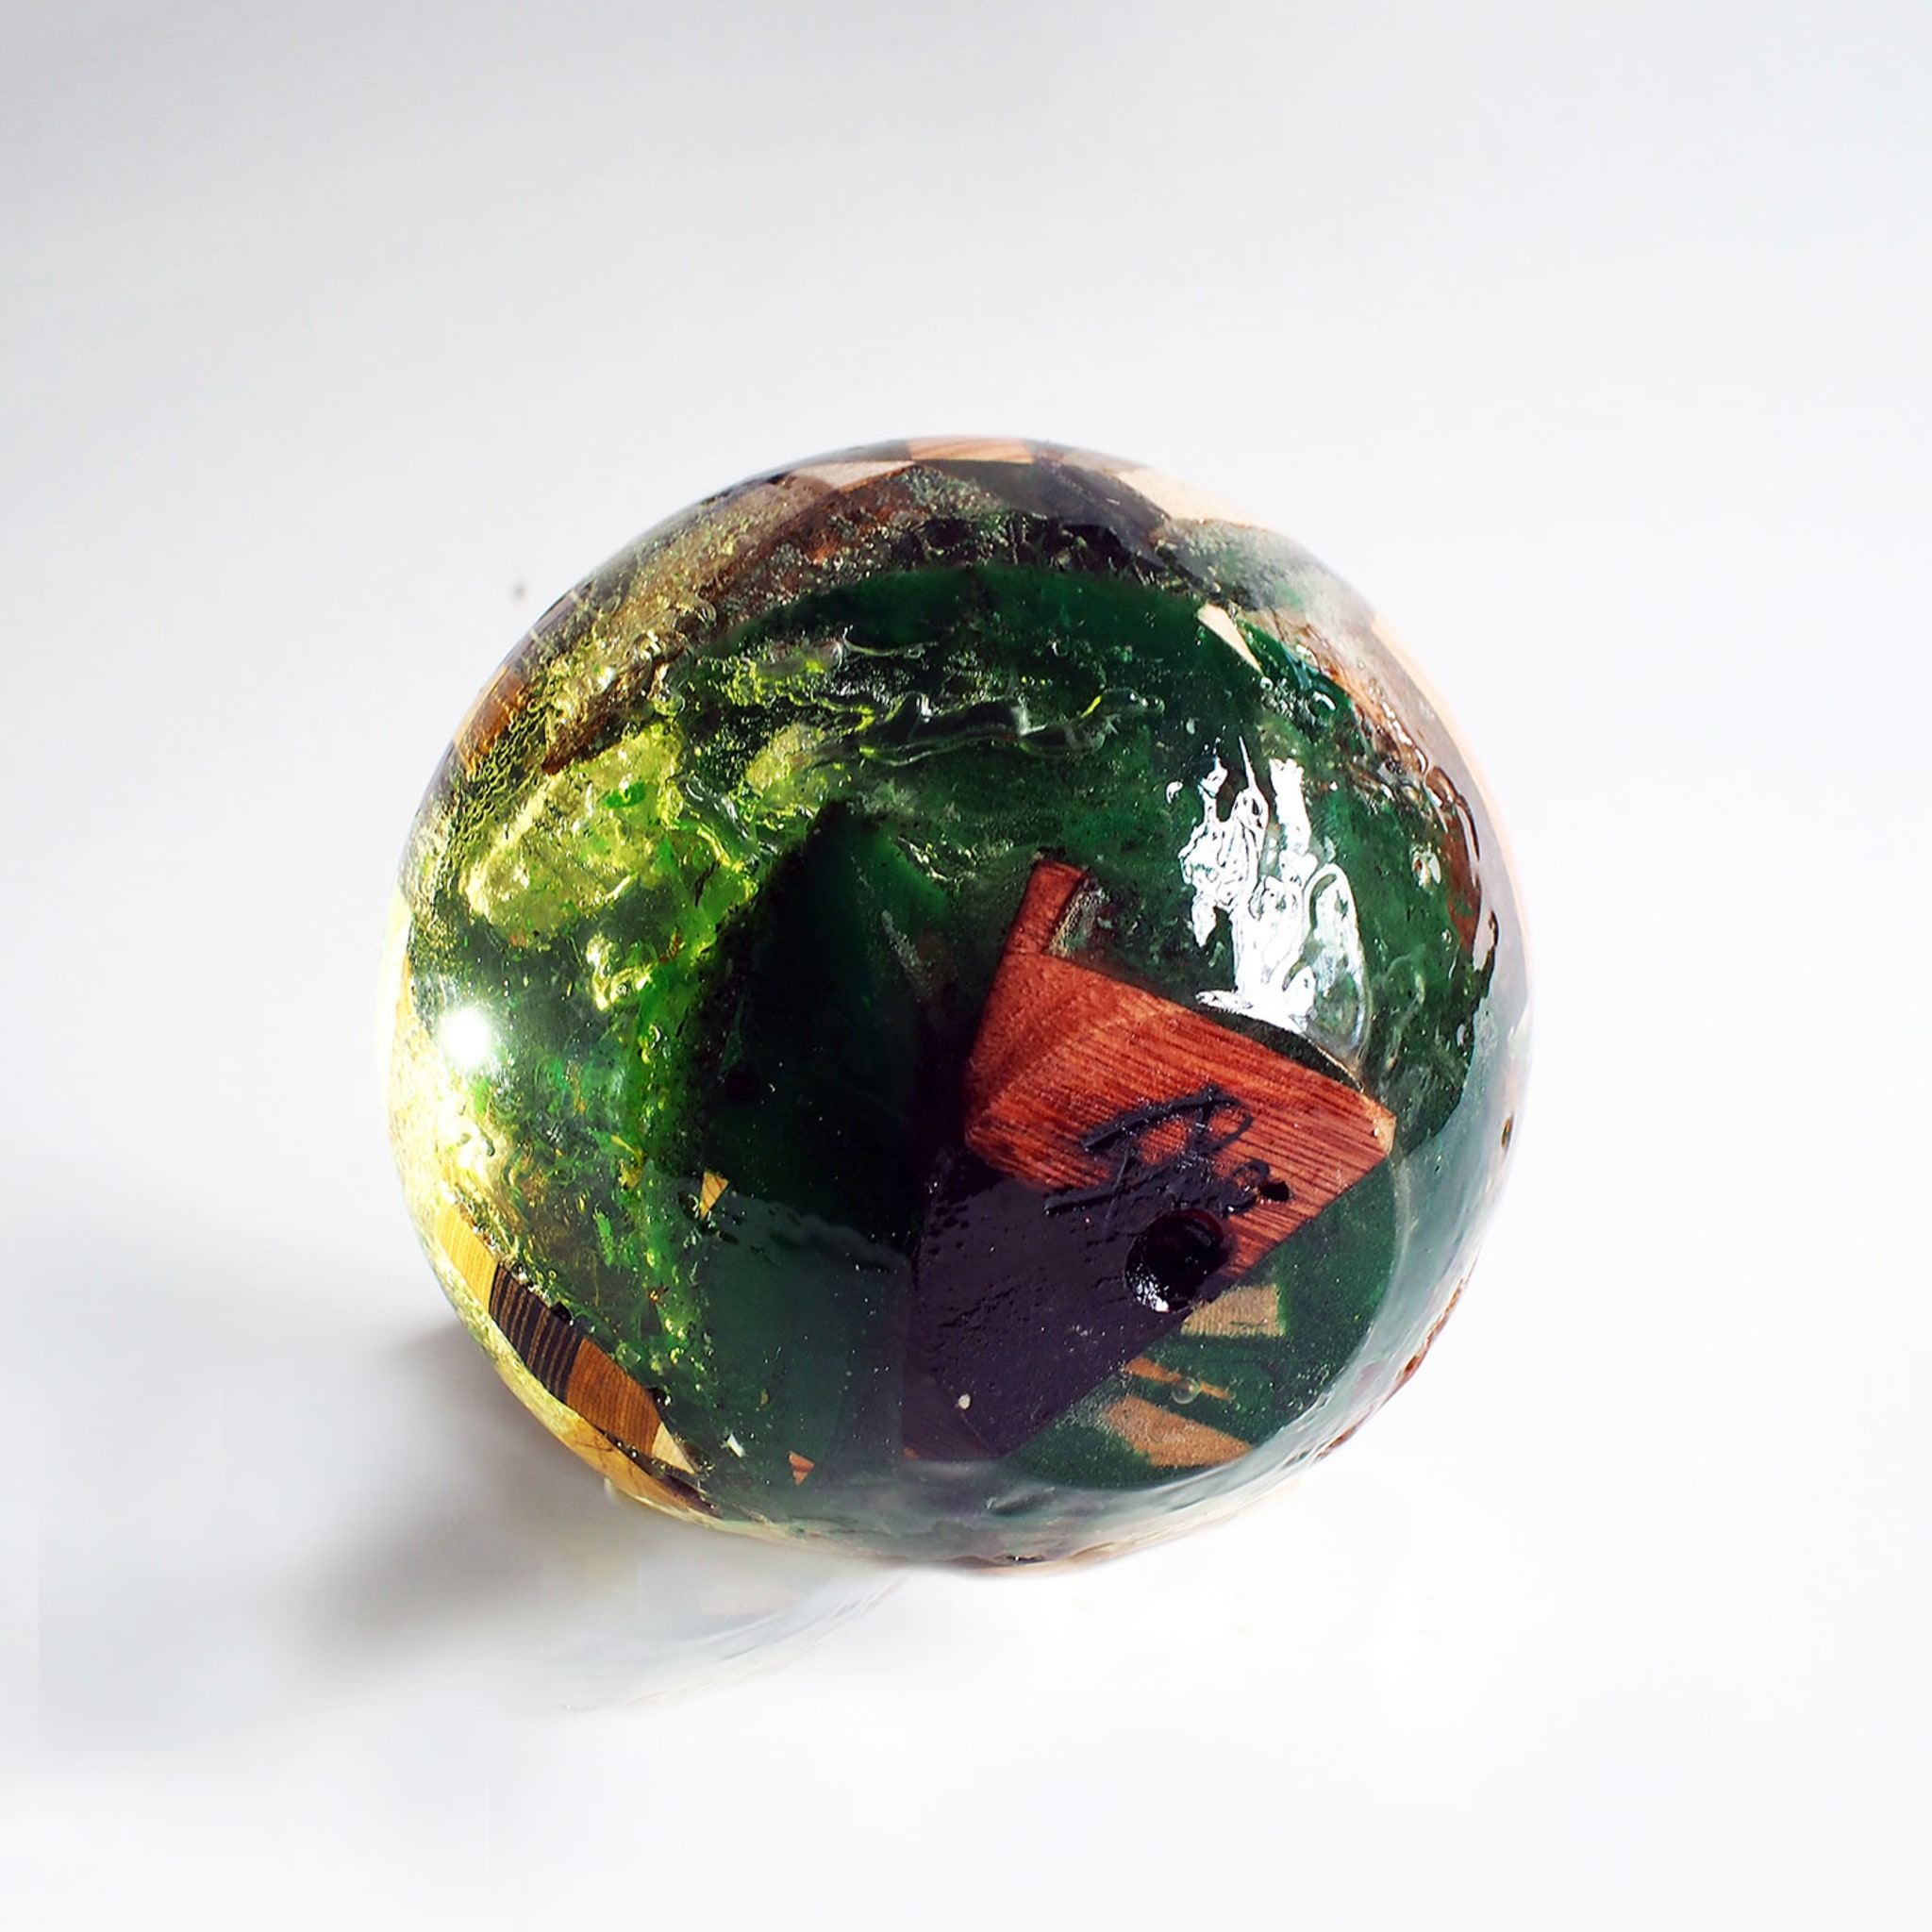 Escultura de manzana policromada en resina transparente - Vista alternativa 1